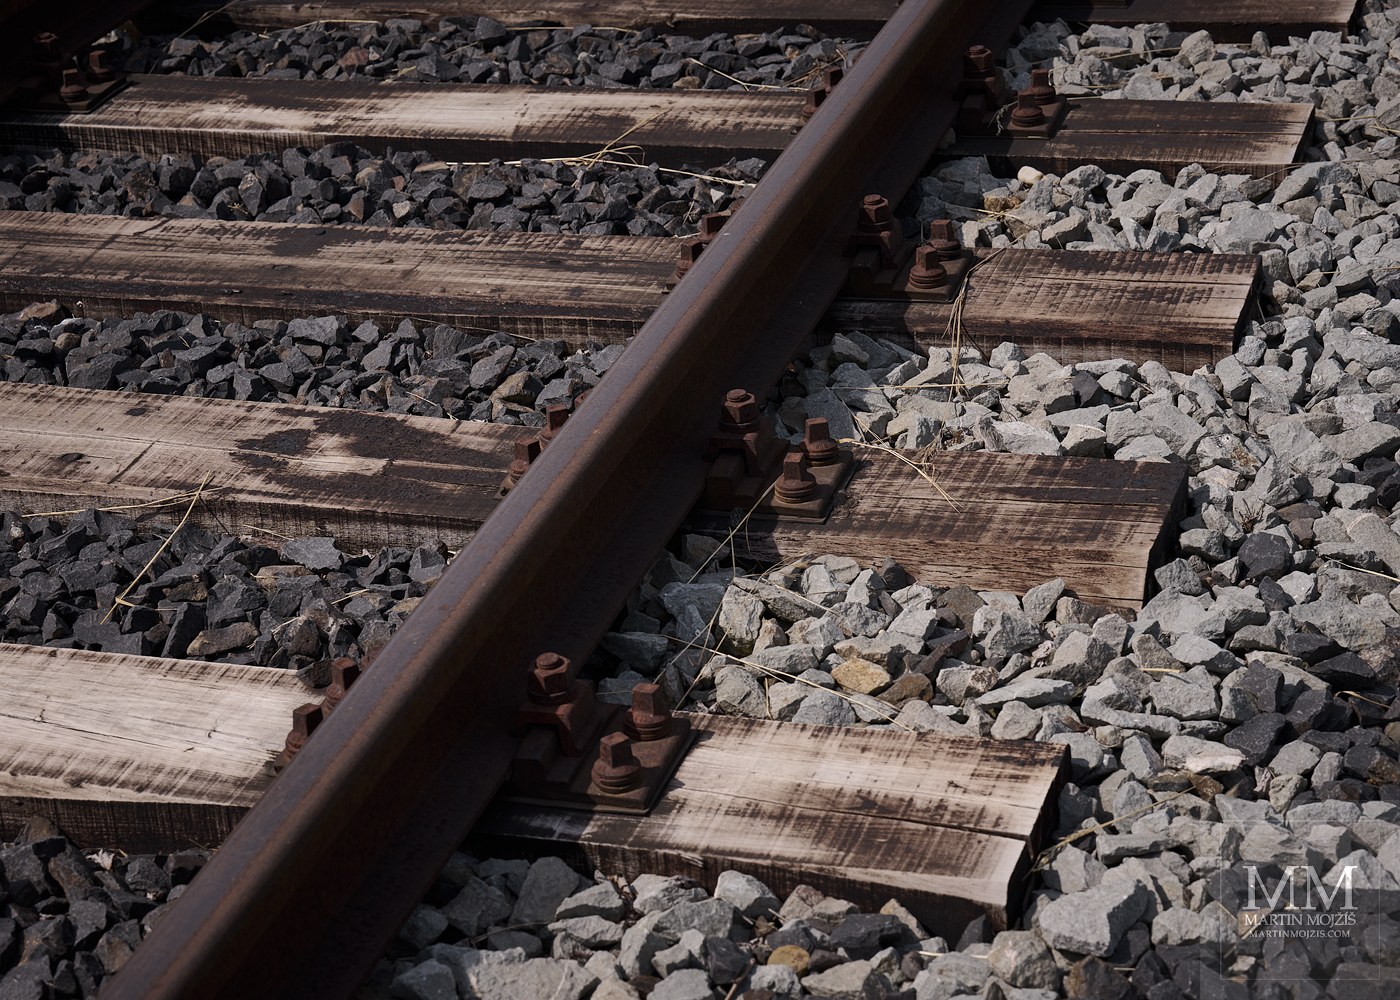 Železniční koleje, dřevěné pražce a štěrkové lože. Umělecká fotografie s názvem DŘEVO, KOV A KÁMEN. Fotograf Martin Mojžíš.